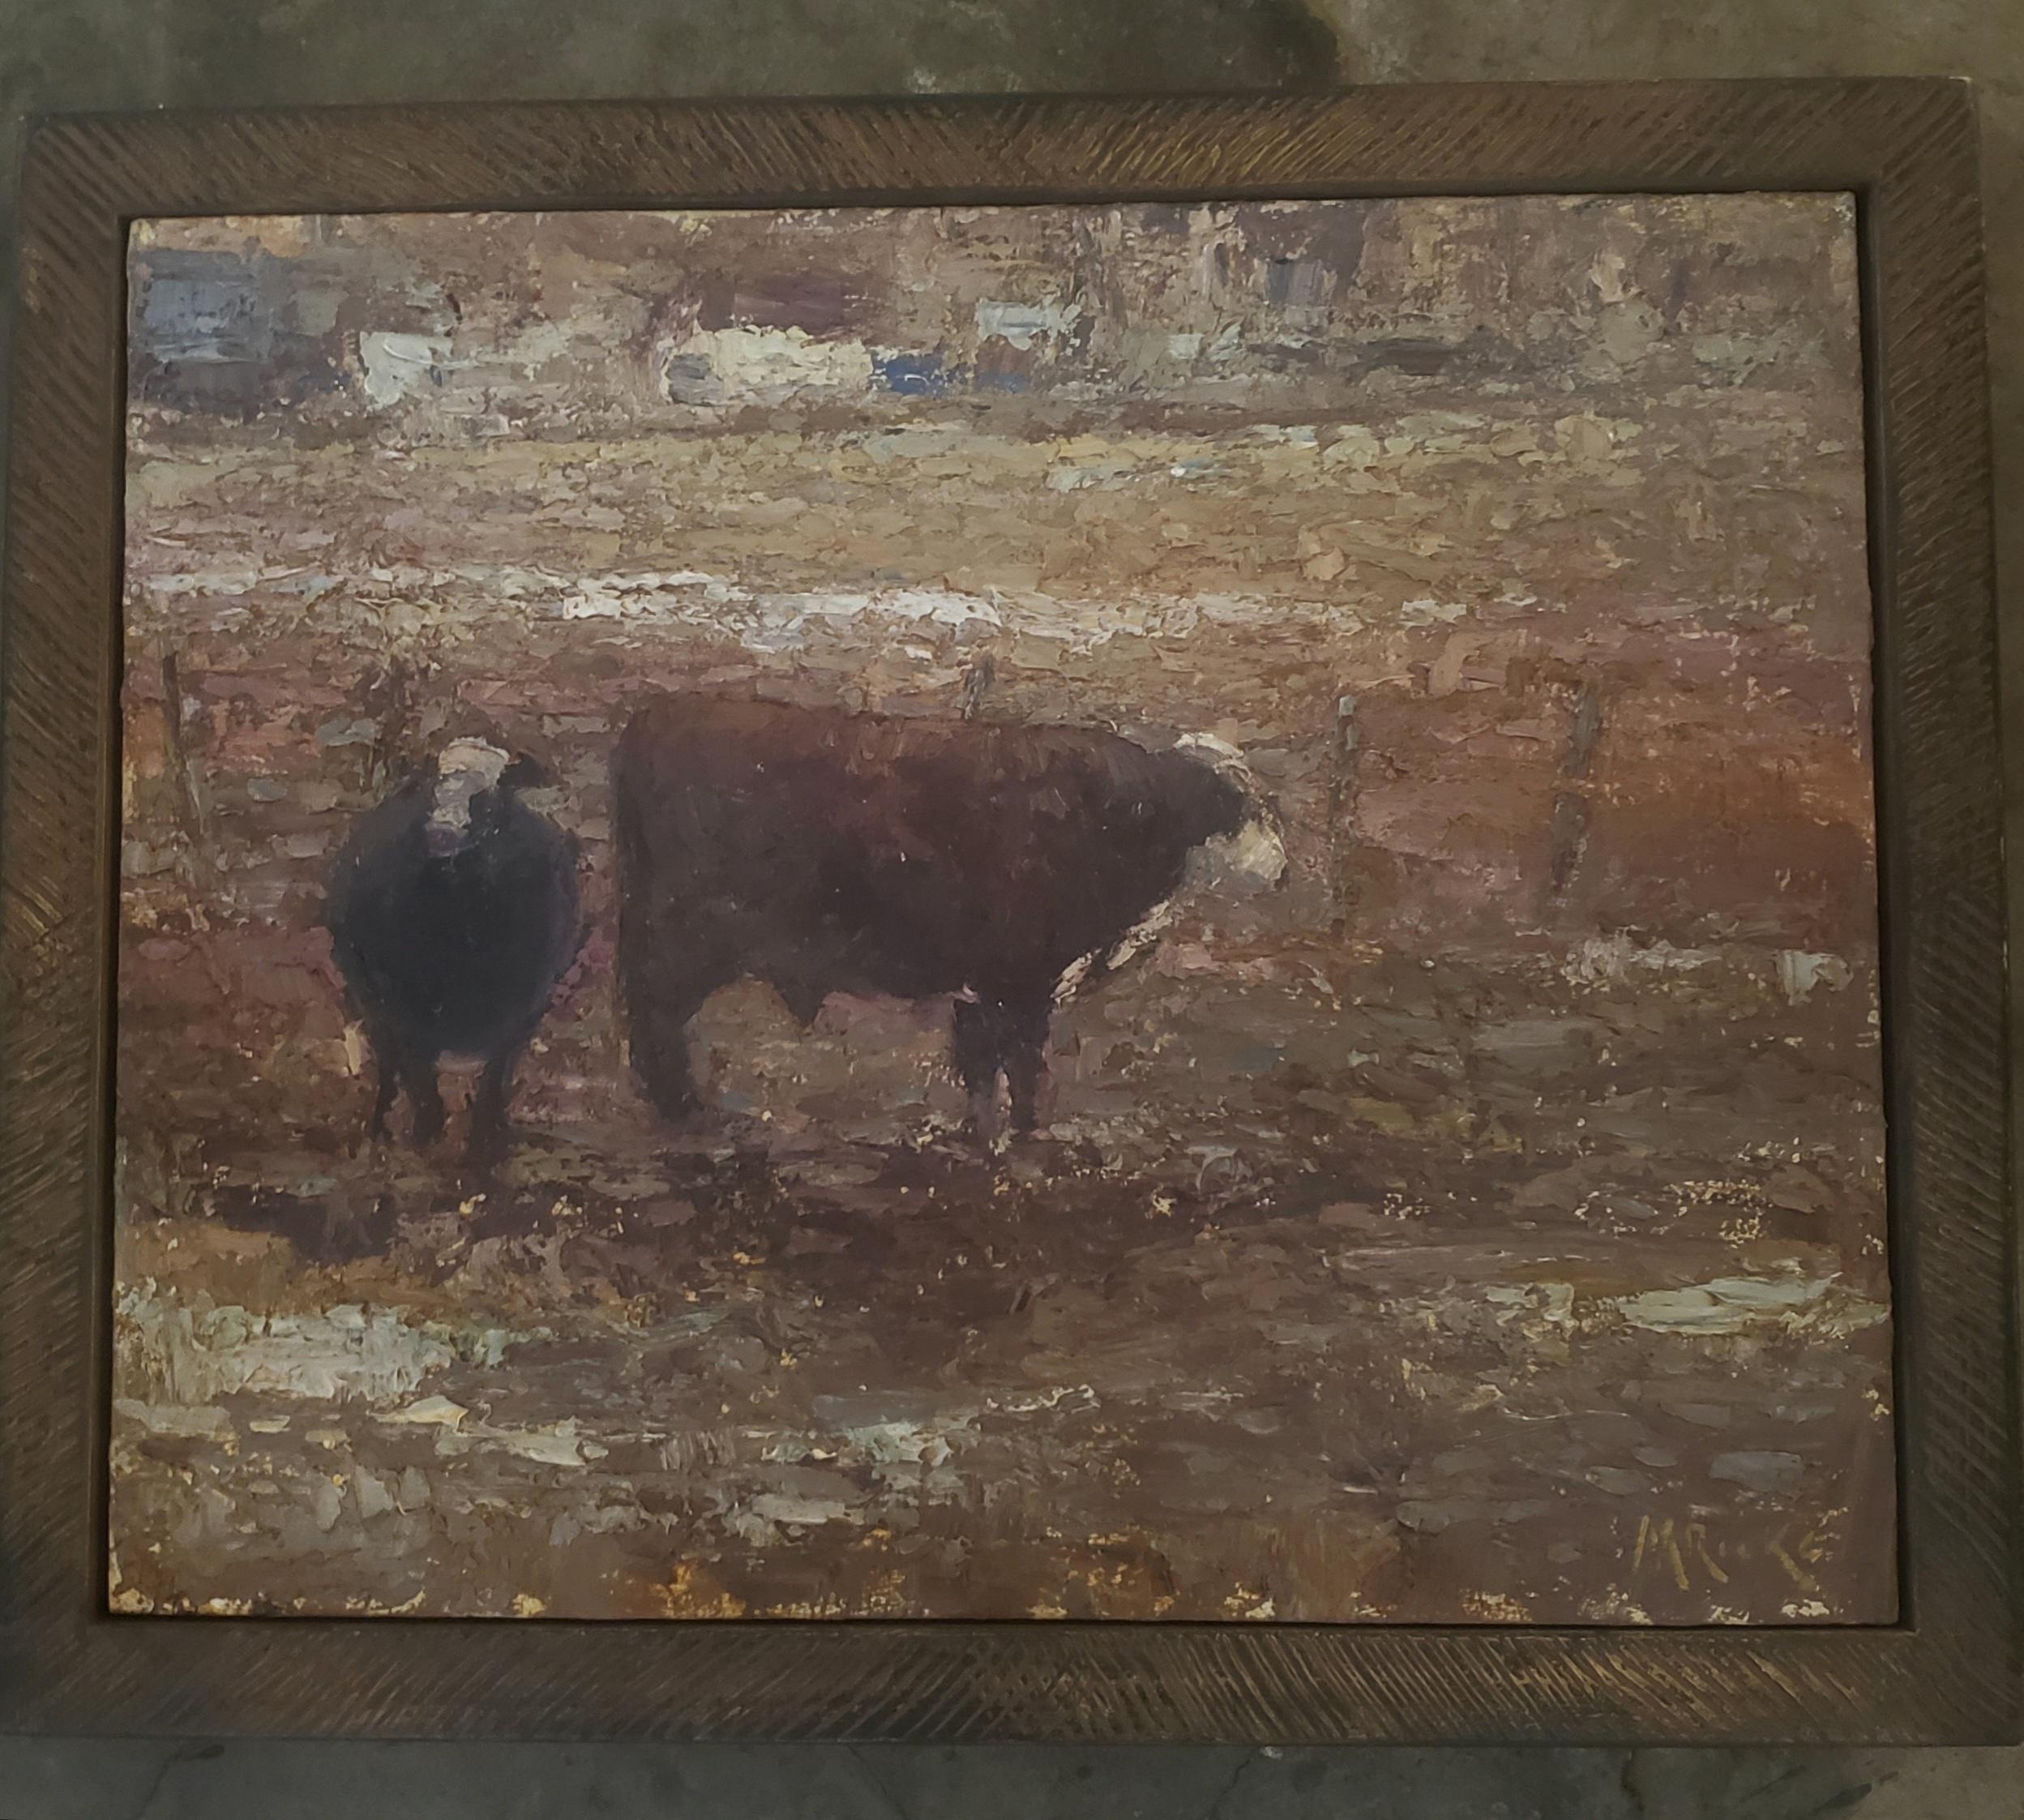 Amerikanische Landschaft mit Stier und Kuh,  Tonalismus, Viehmalerei, Utah, Idaho – Painting von Marty Ricks